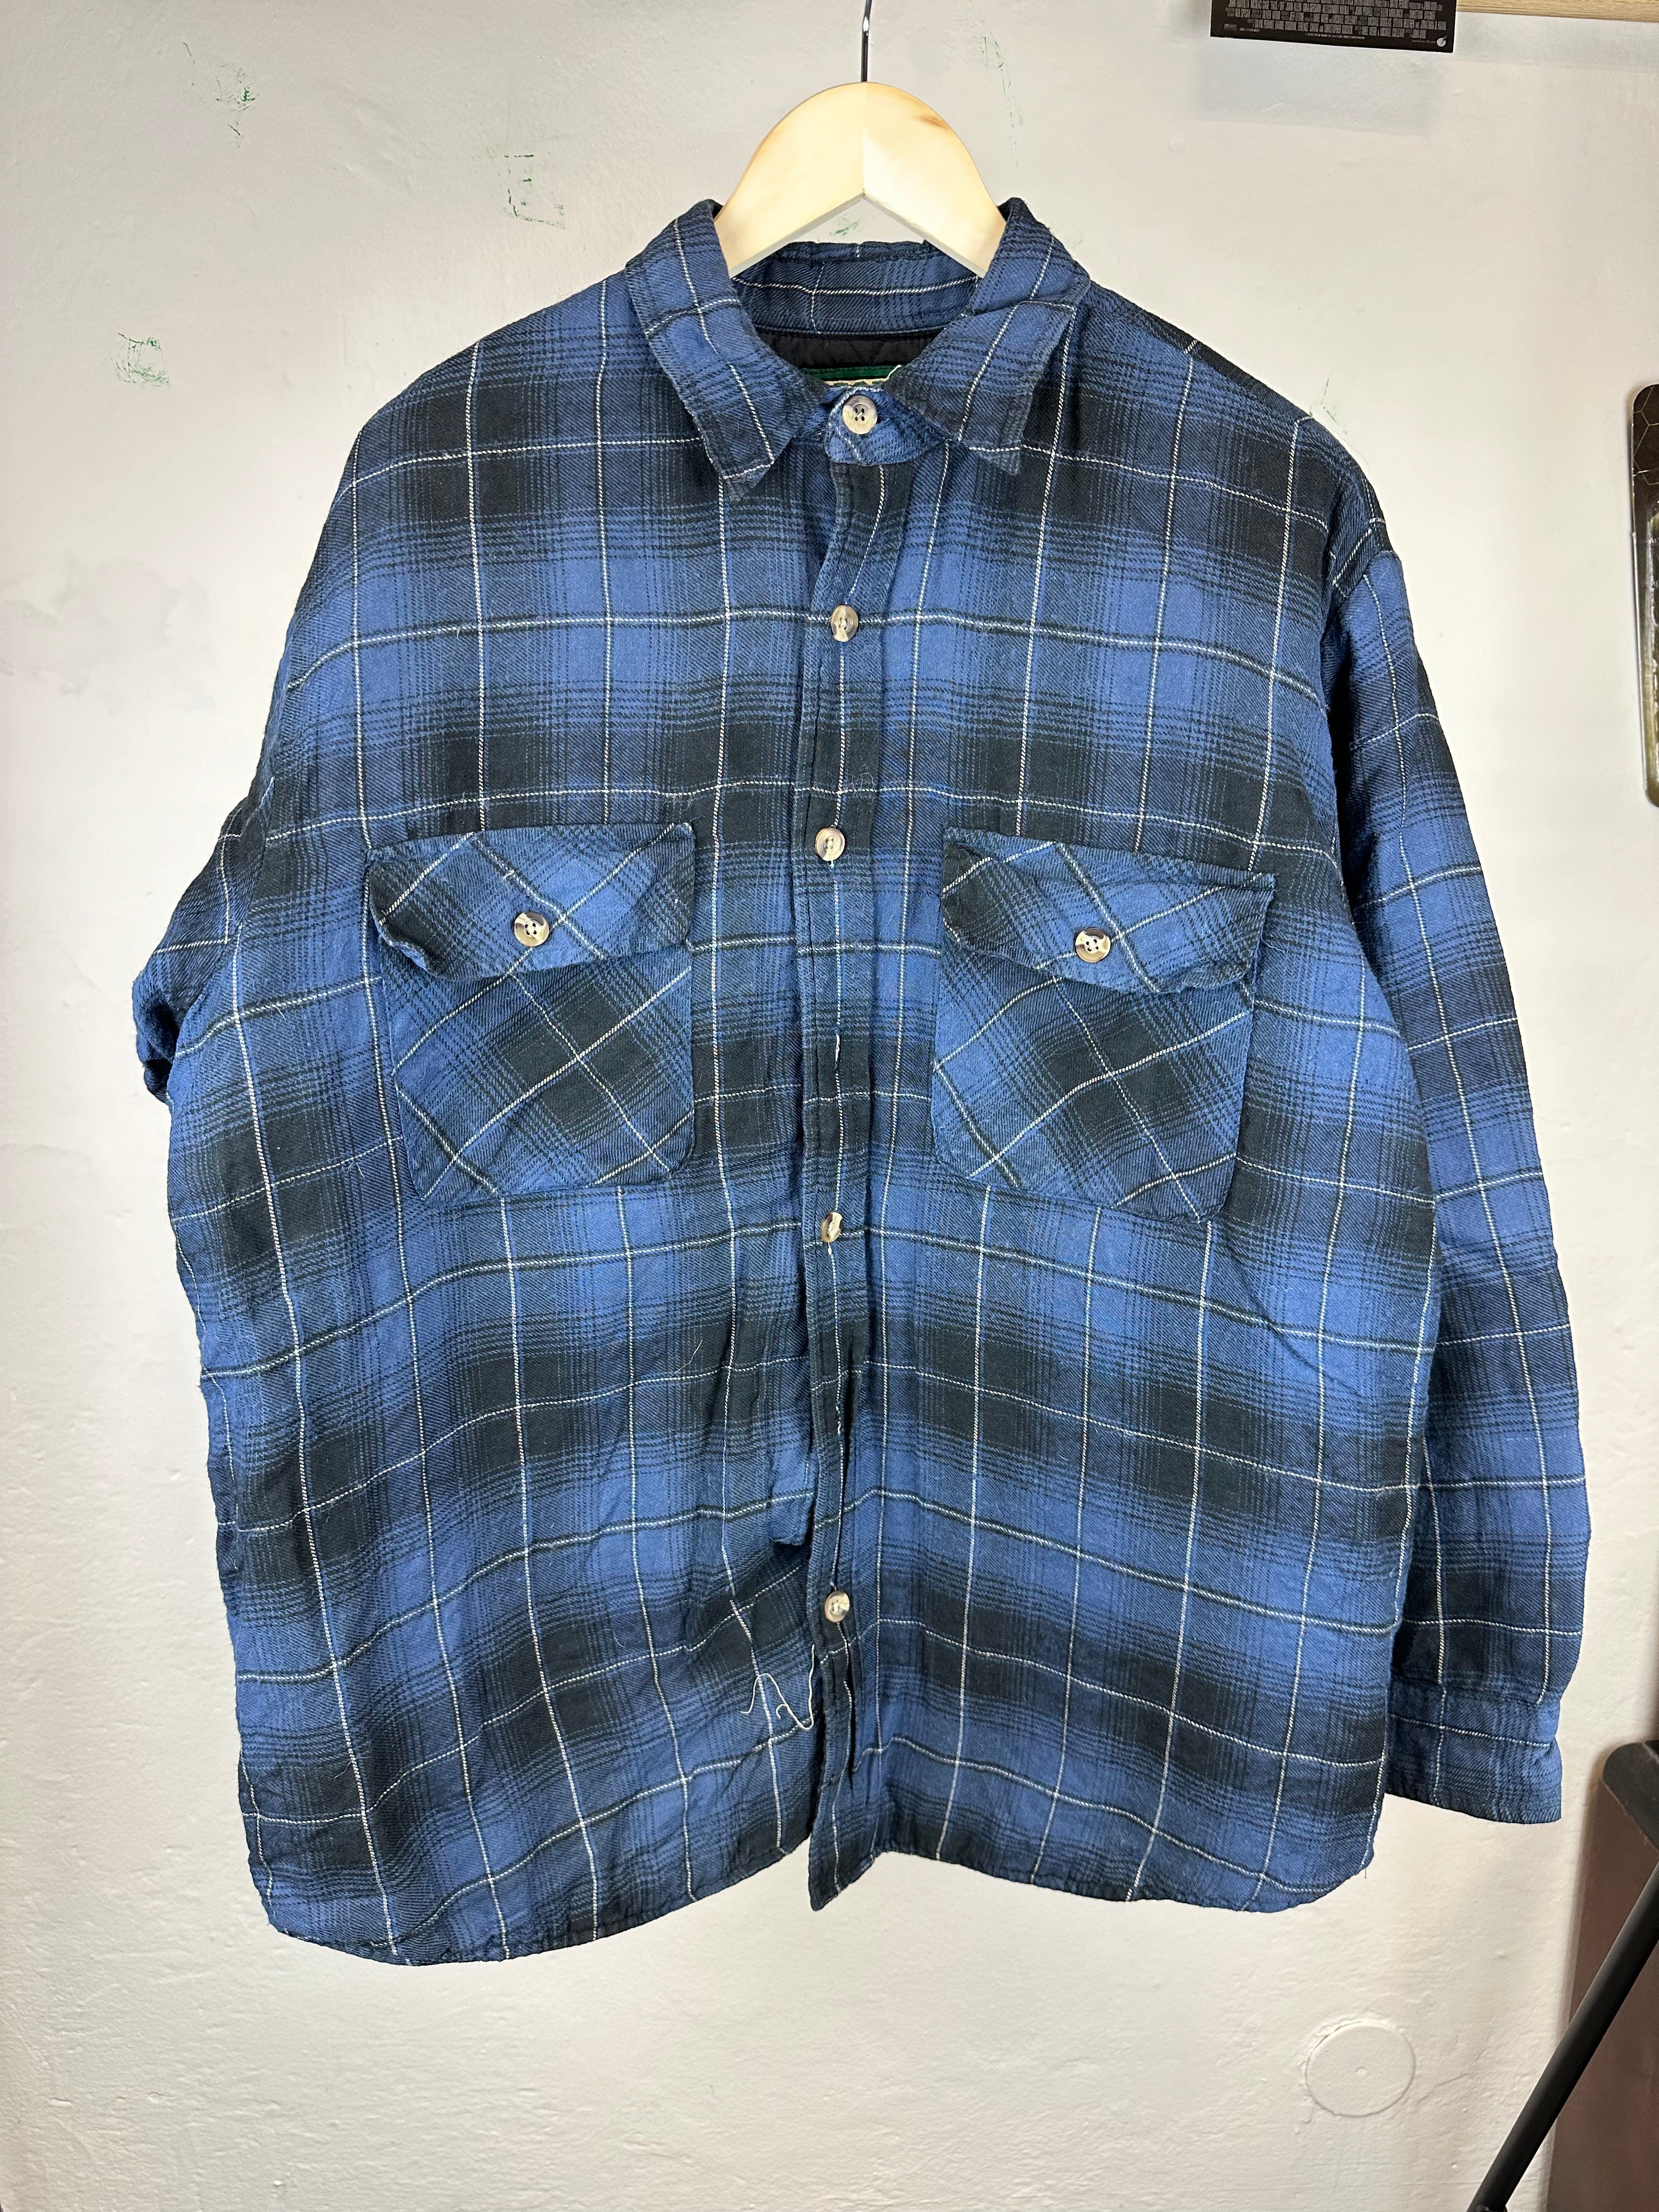 Vintage Flannel 90s Shirt - size L